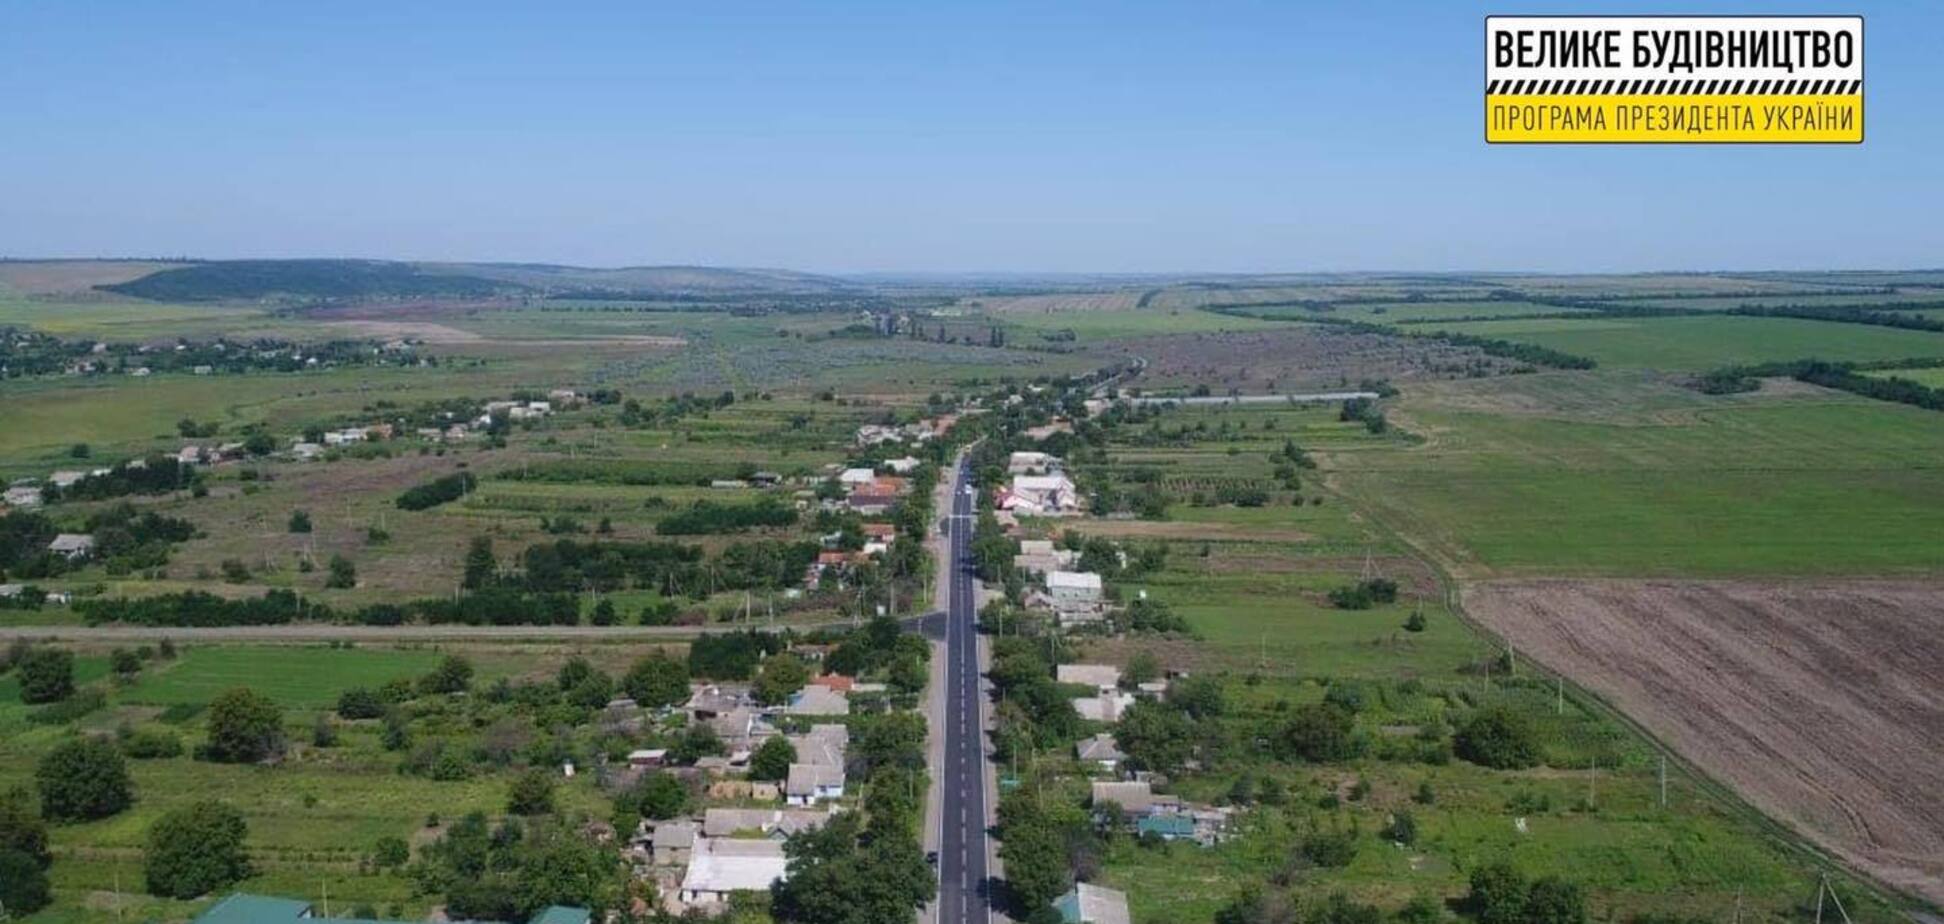 'Велике будівництво': 'Автомагістраль-Південь' відновила 9-кілометрову ділянку траси Р-33 на Одещині